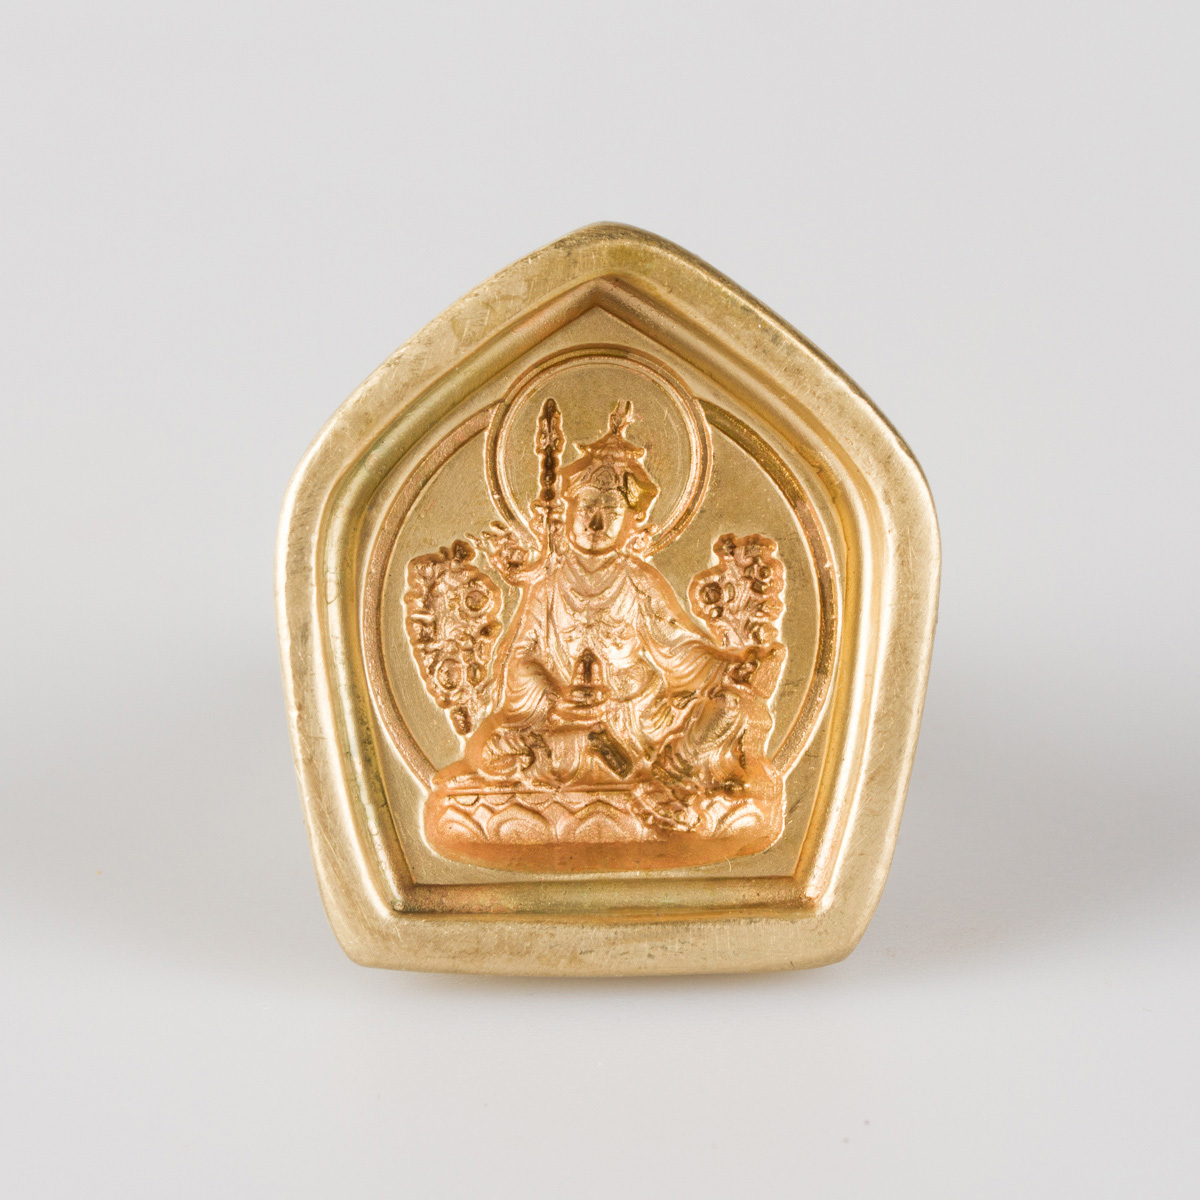 Форма для изготовления ца-ца Гуру Падмасамбхава (3 x 3,3 см), 3 x 3,3 см